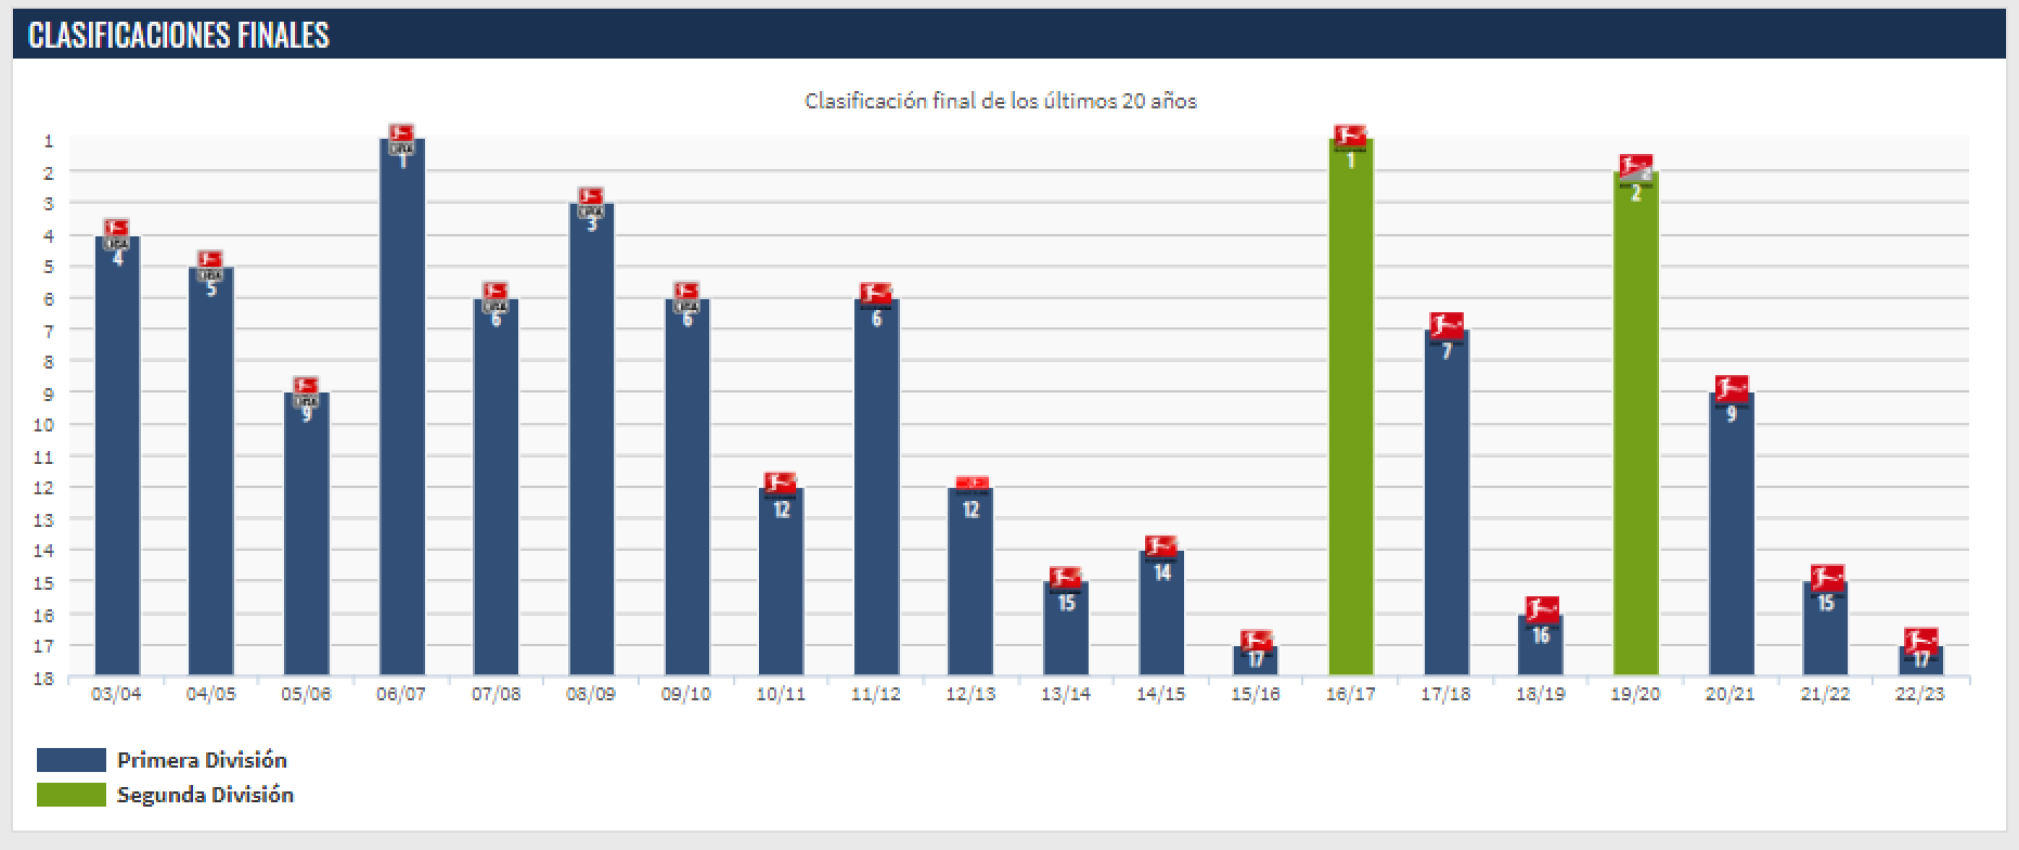 Trayectoria histórica del Schalke 04 en los últimos 20 años. / Fuente: TransferMarkt